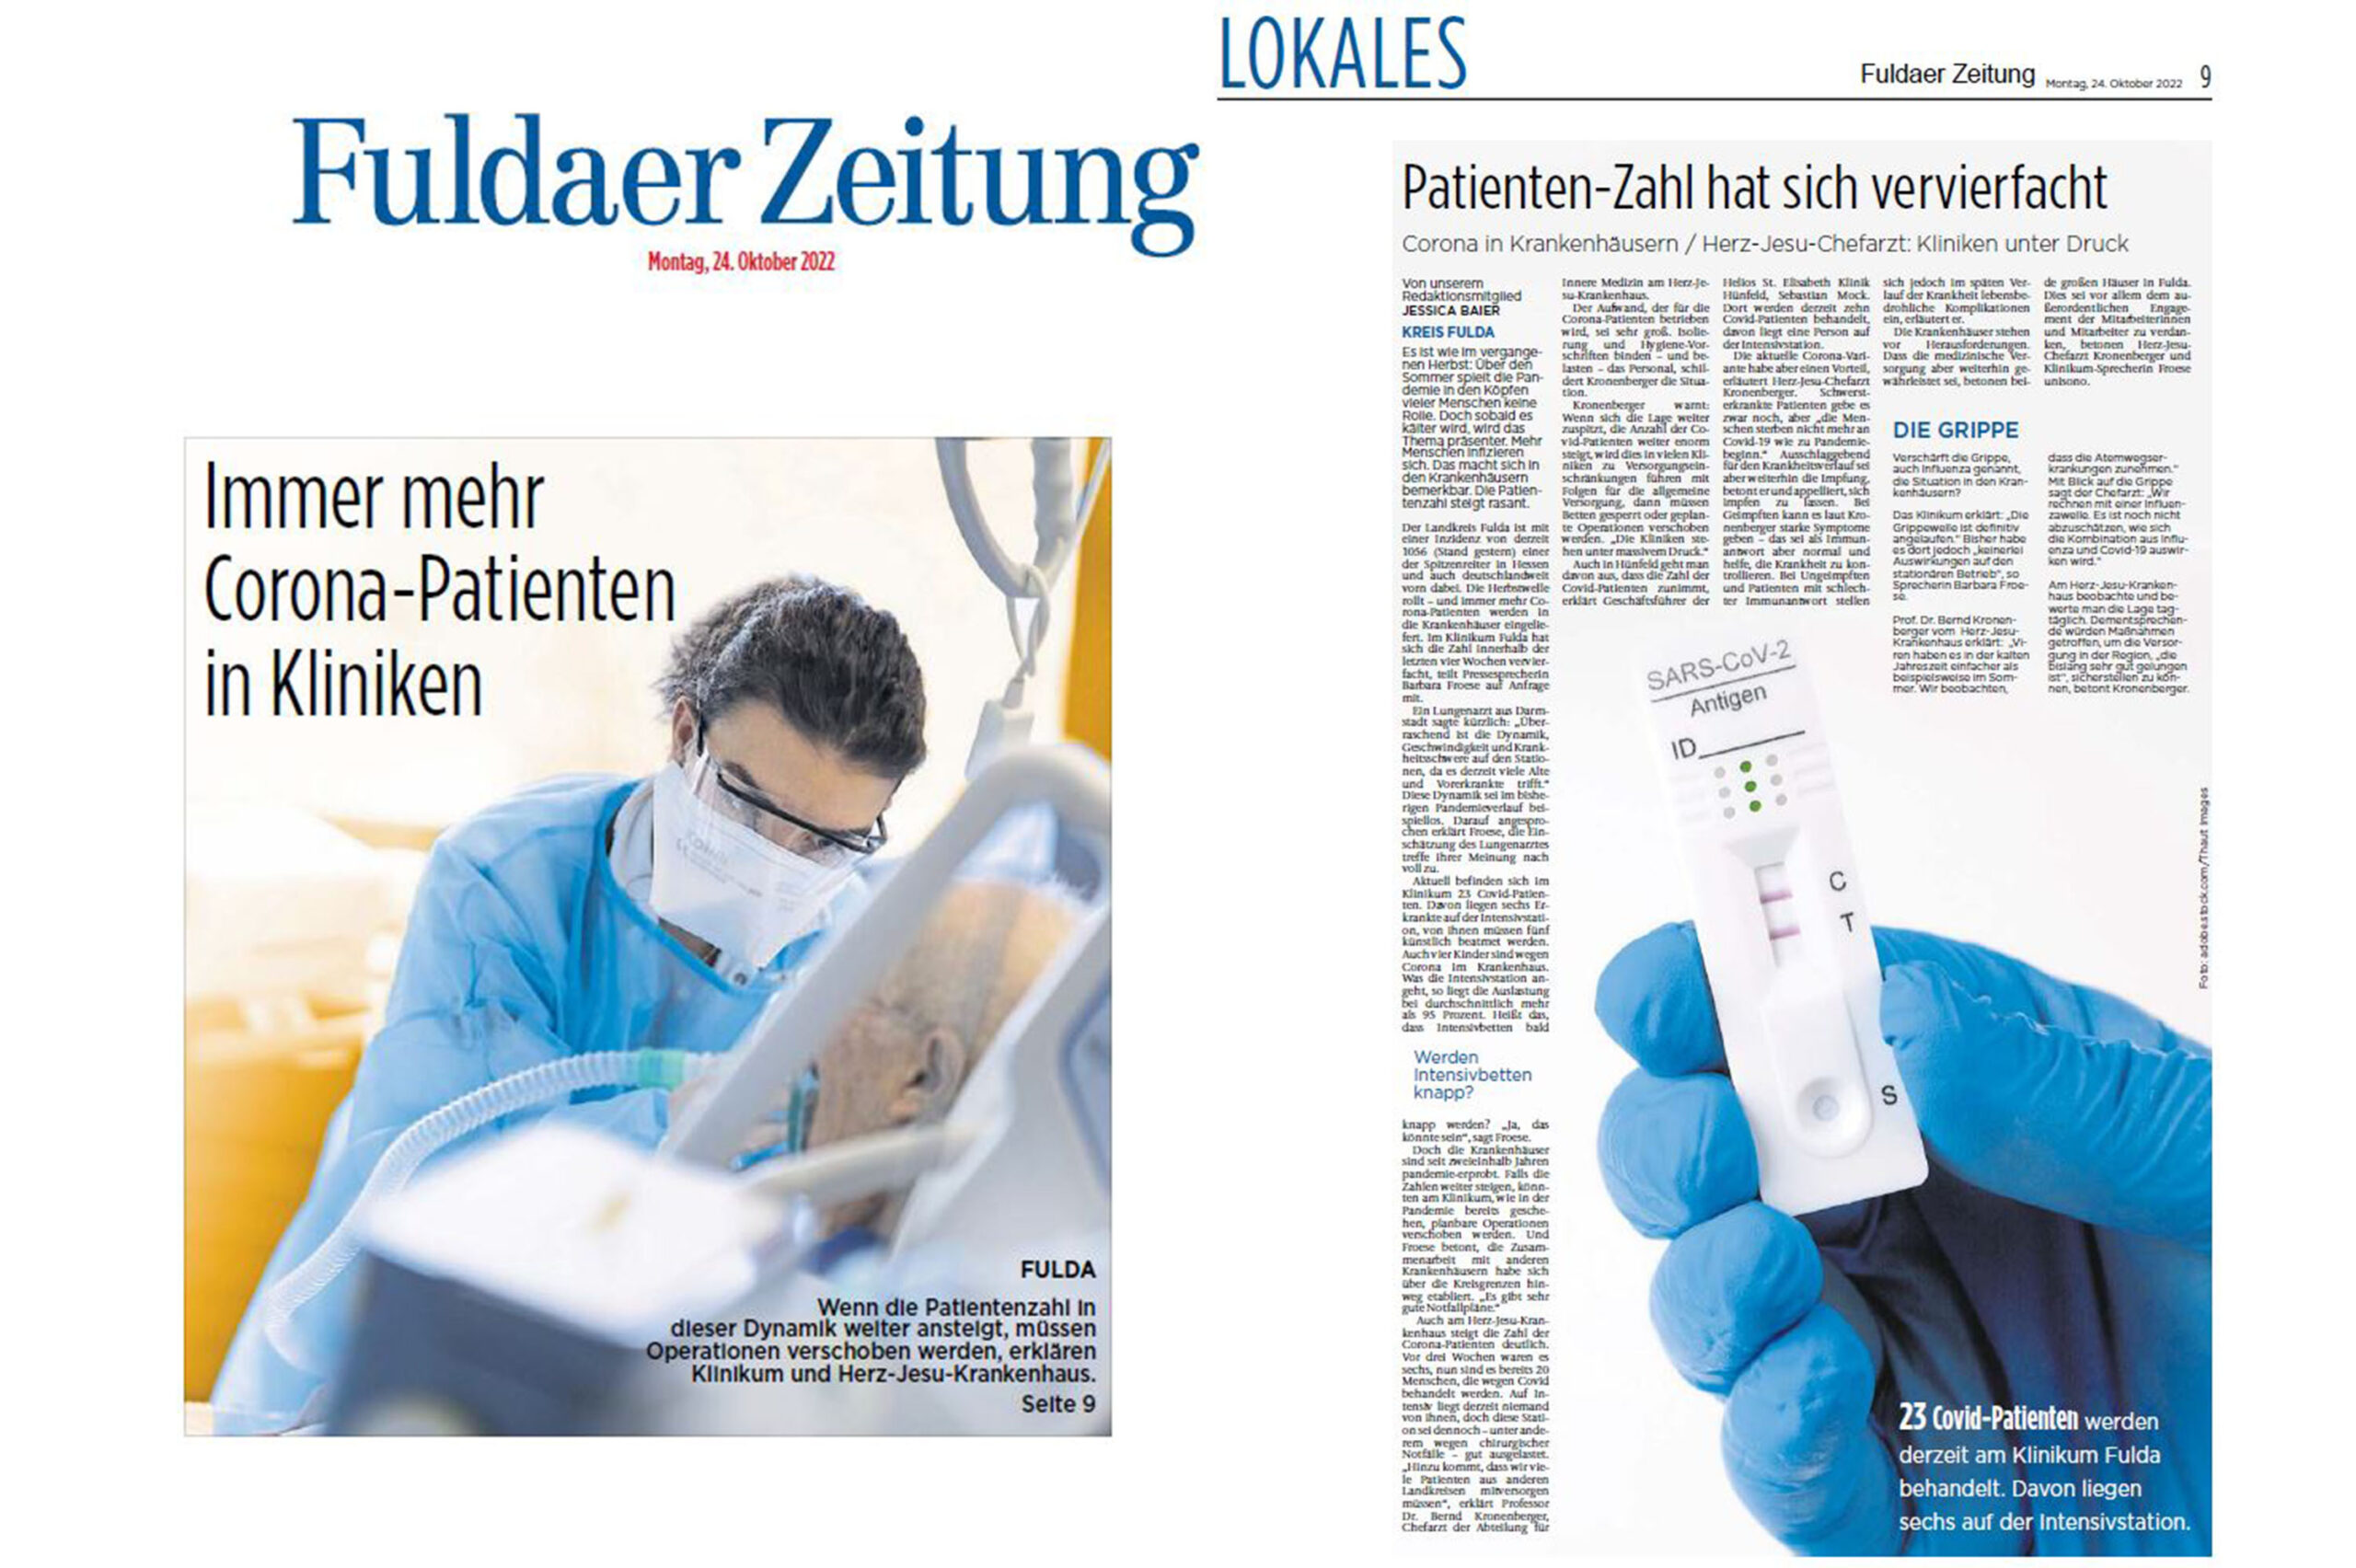 Fuldaer Zeitung: Patientenzahl vervierfacht - Corona setzt Kliniken in Osthessen unter Druck